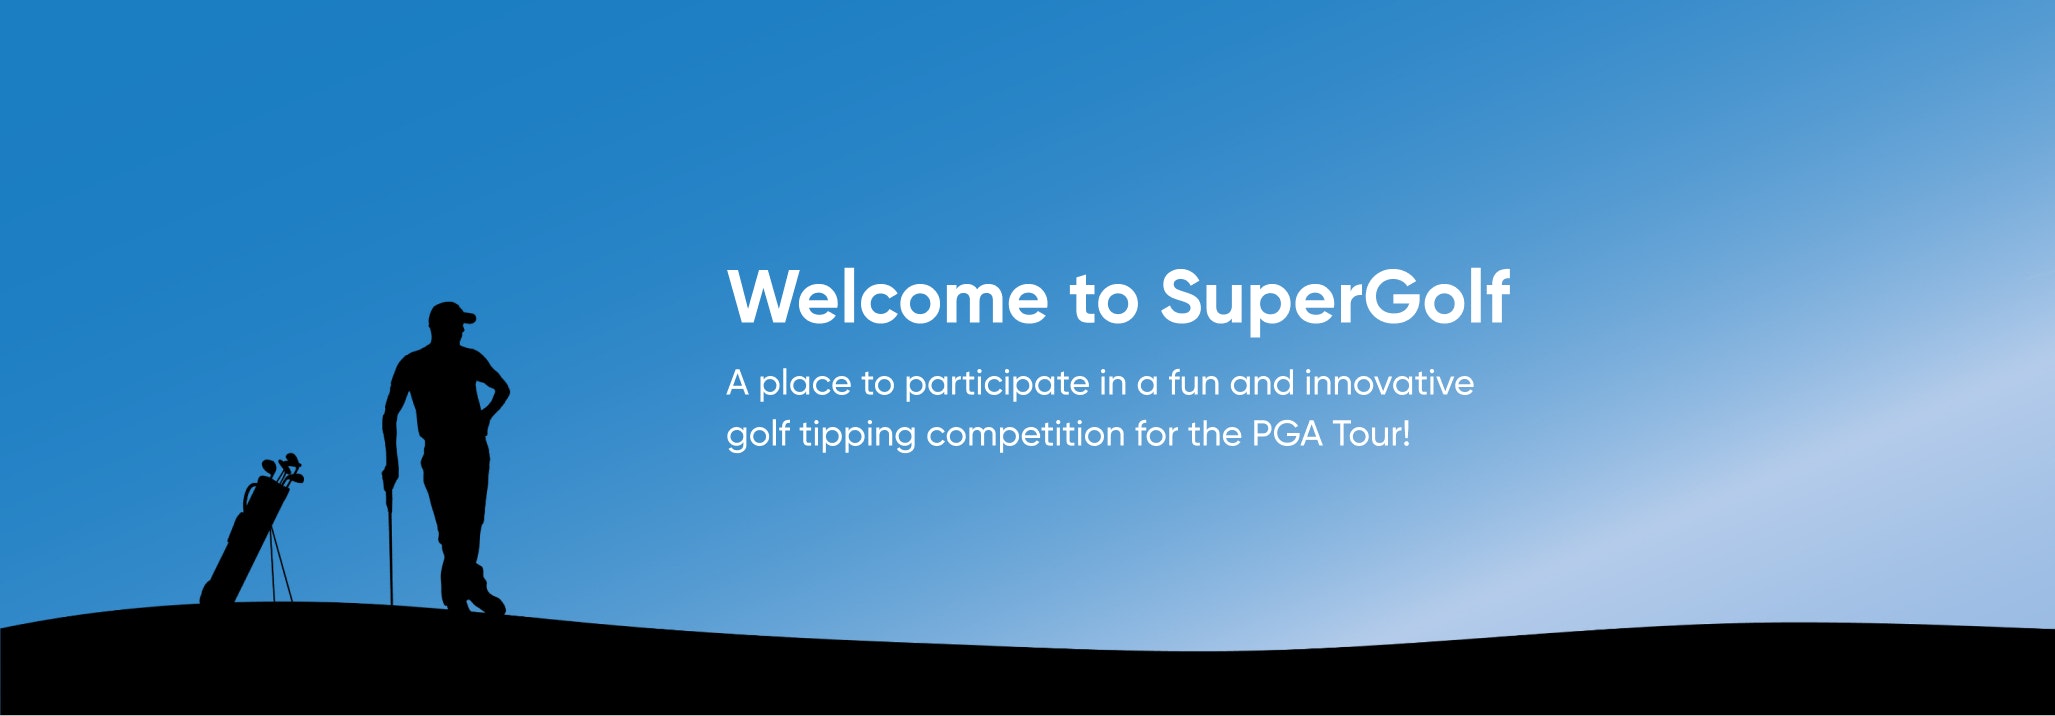 SuperGolf - PGA Tour